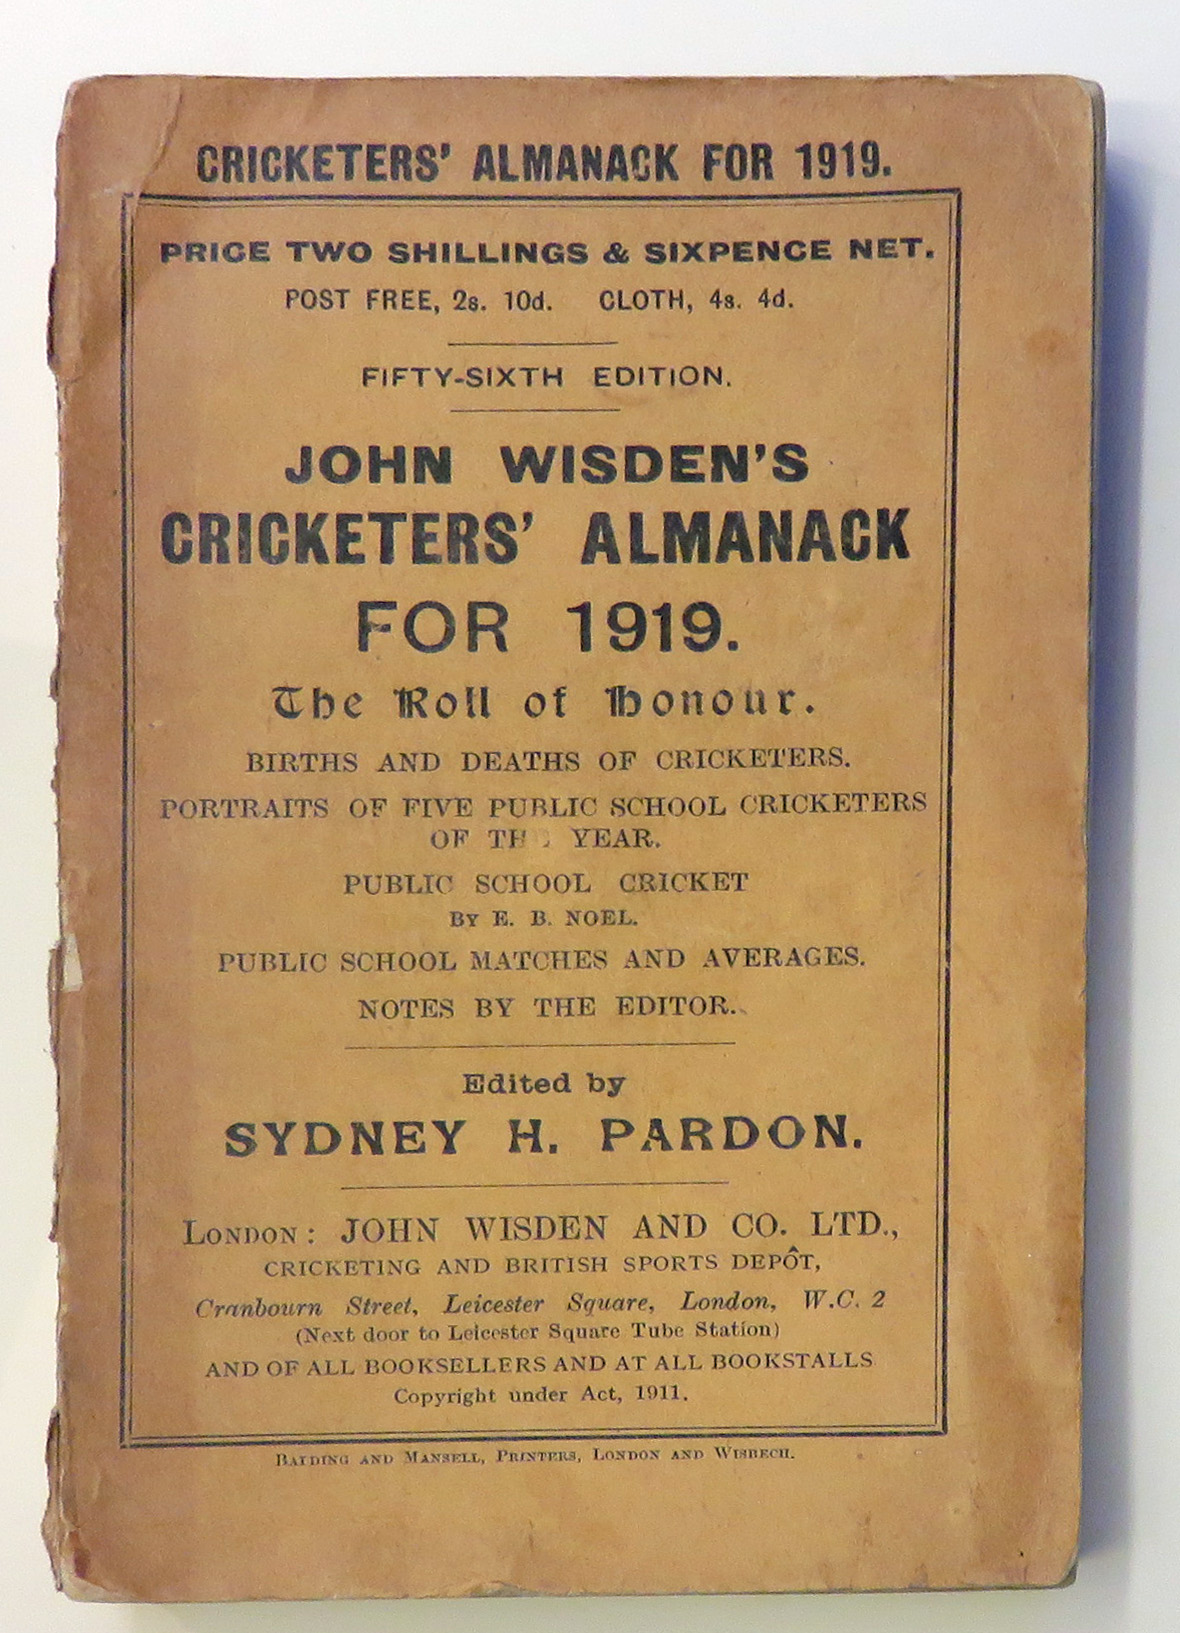 **John Wisden's Cricketers' Almanack For 1919